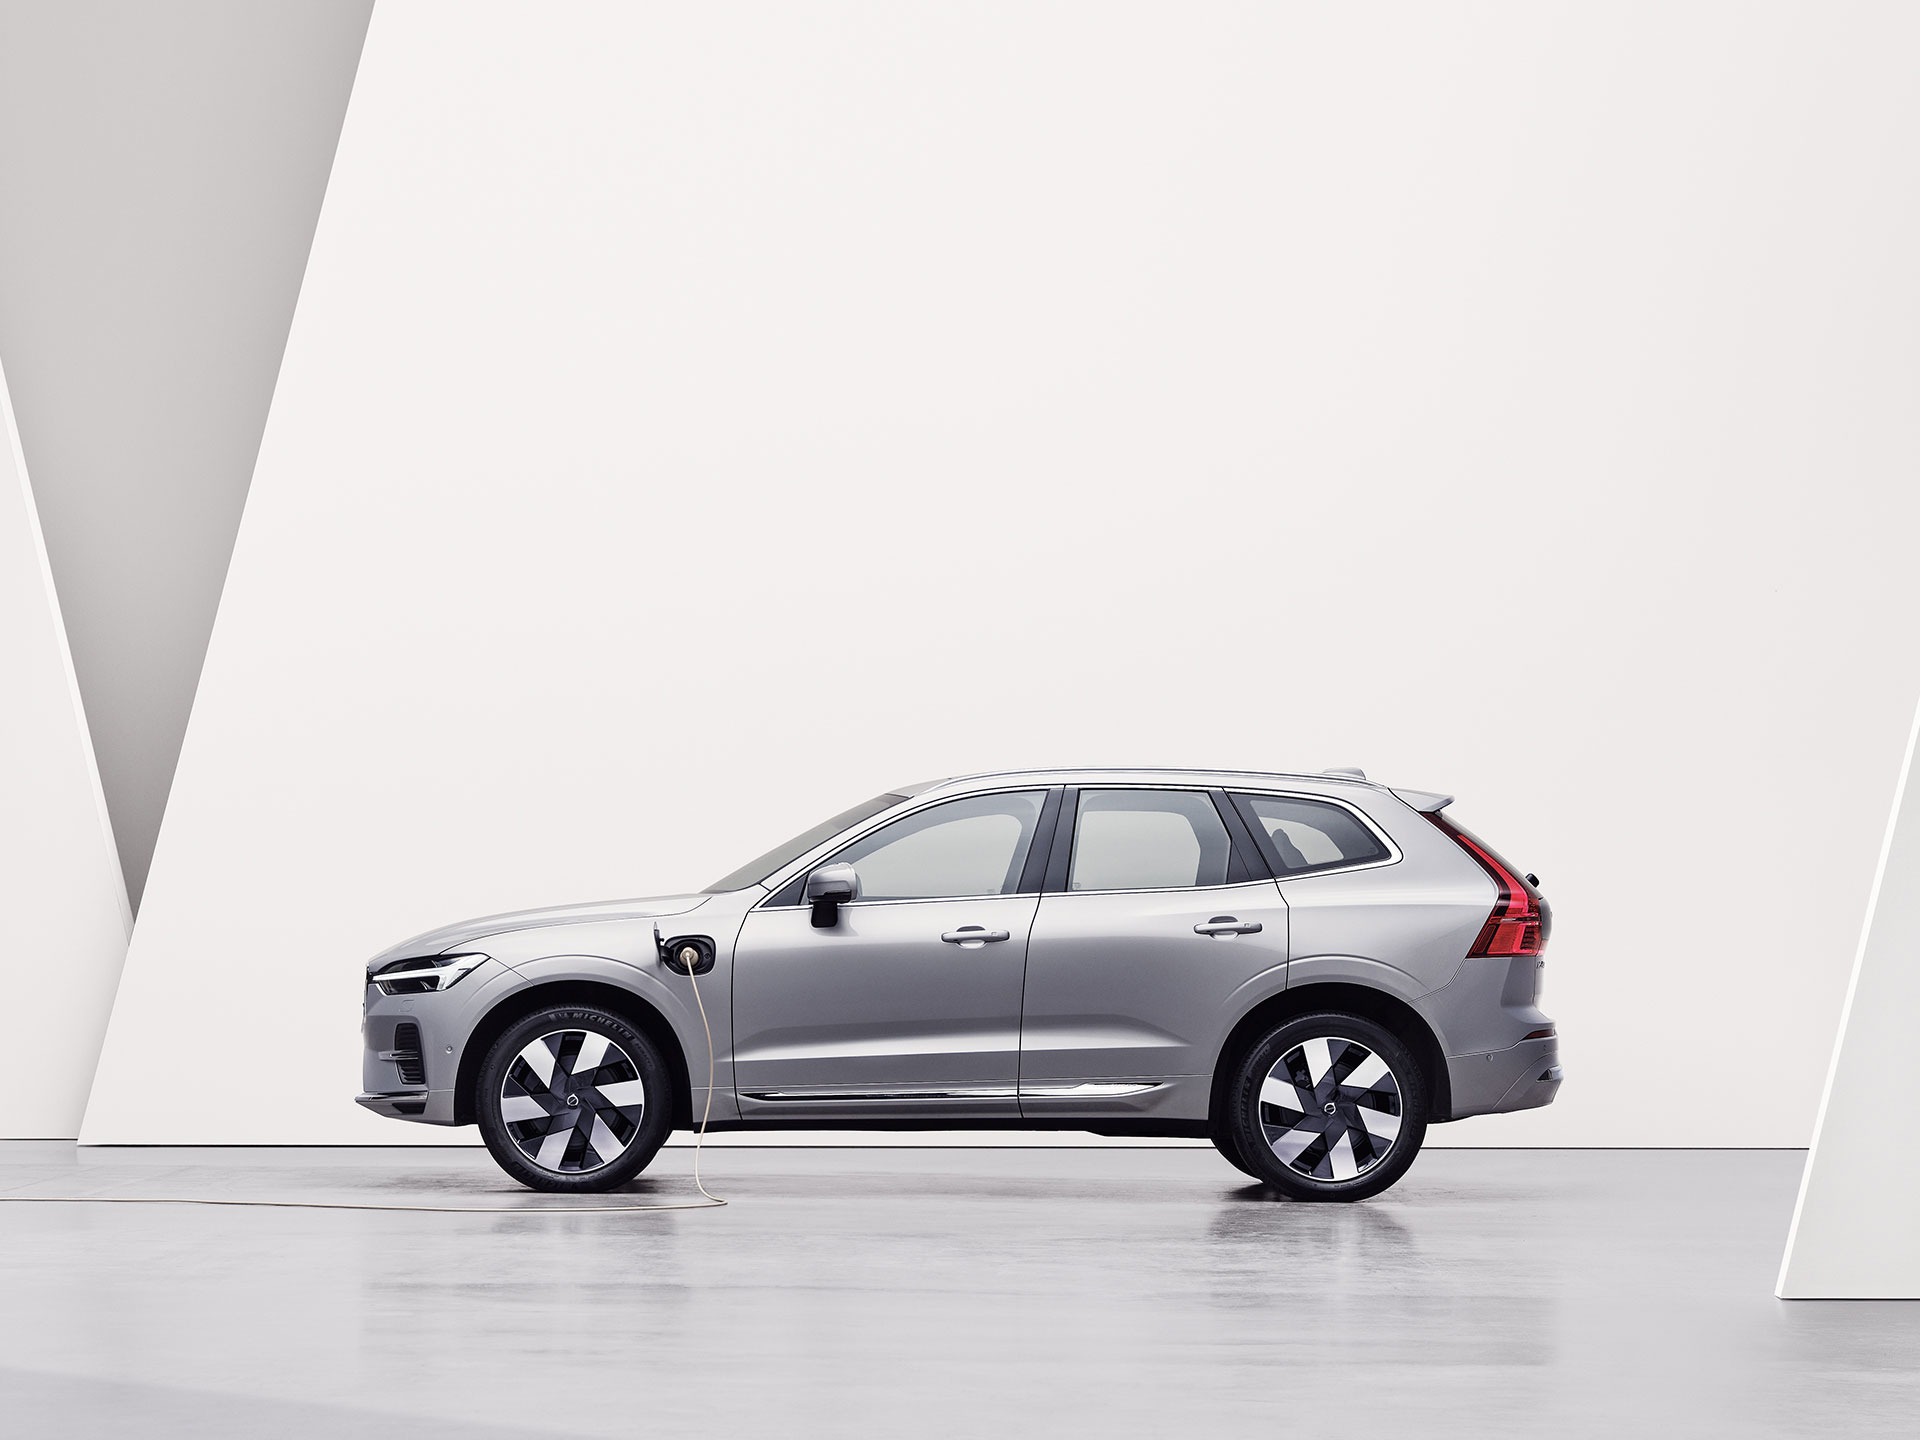 SUV hybride rechargeable Volvo XC60 Recharge argent, en charge dans un environnement blanc.